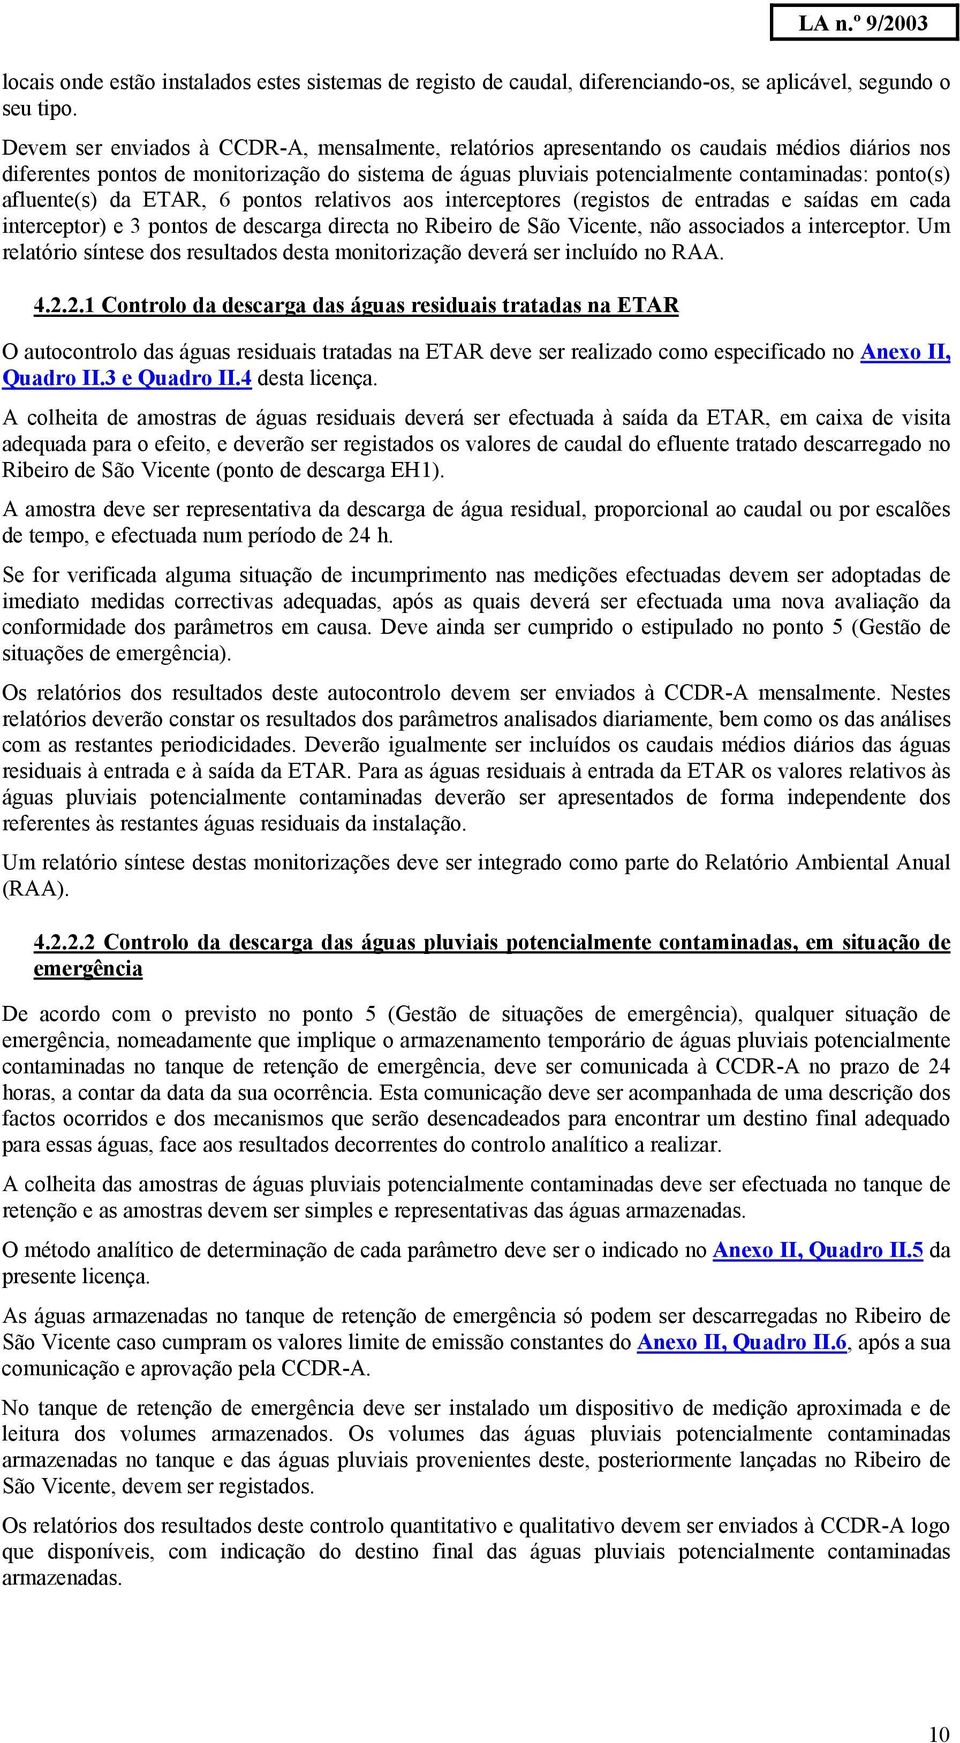 afluente(s) da ETAR, 6 pontos relativos aos interceptores (registos de entradas e saídas em cada interceptor) e 3 pontos de descarga directa no Ribeiro de São Vicente, não associados a interceptor.